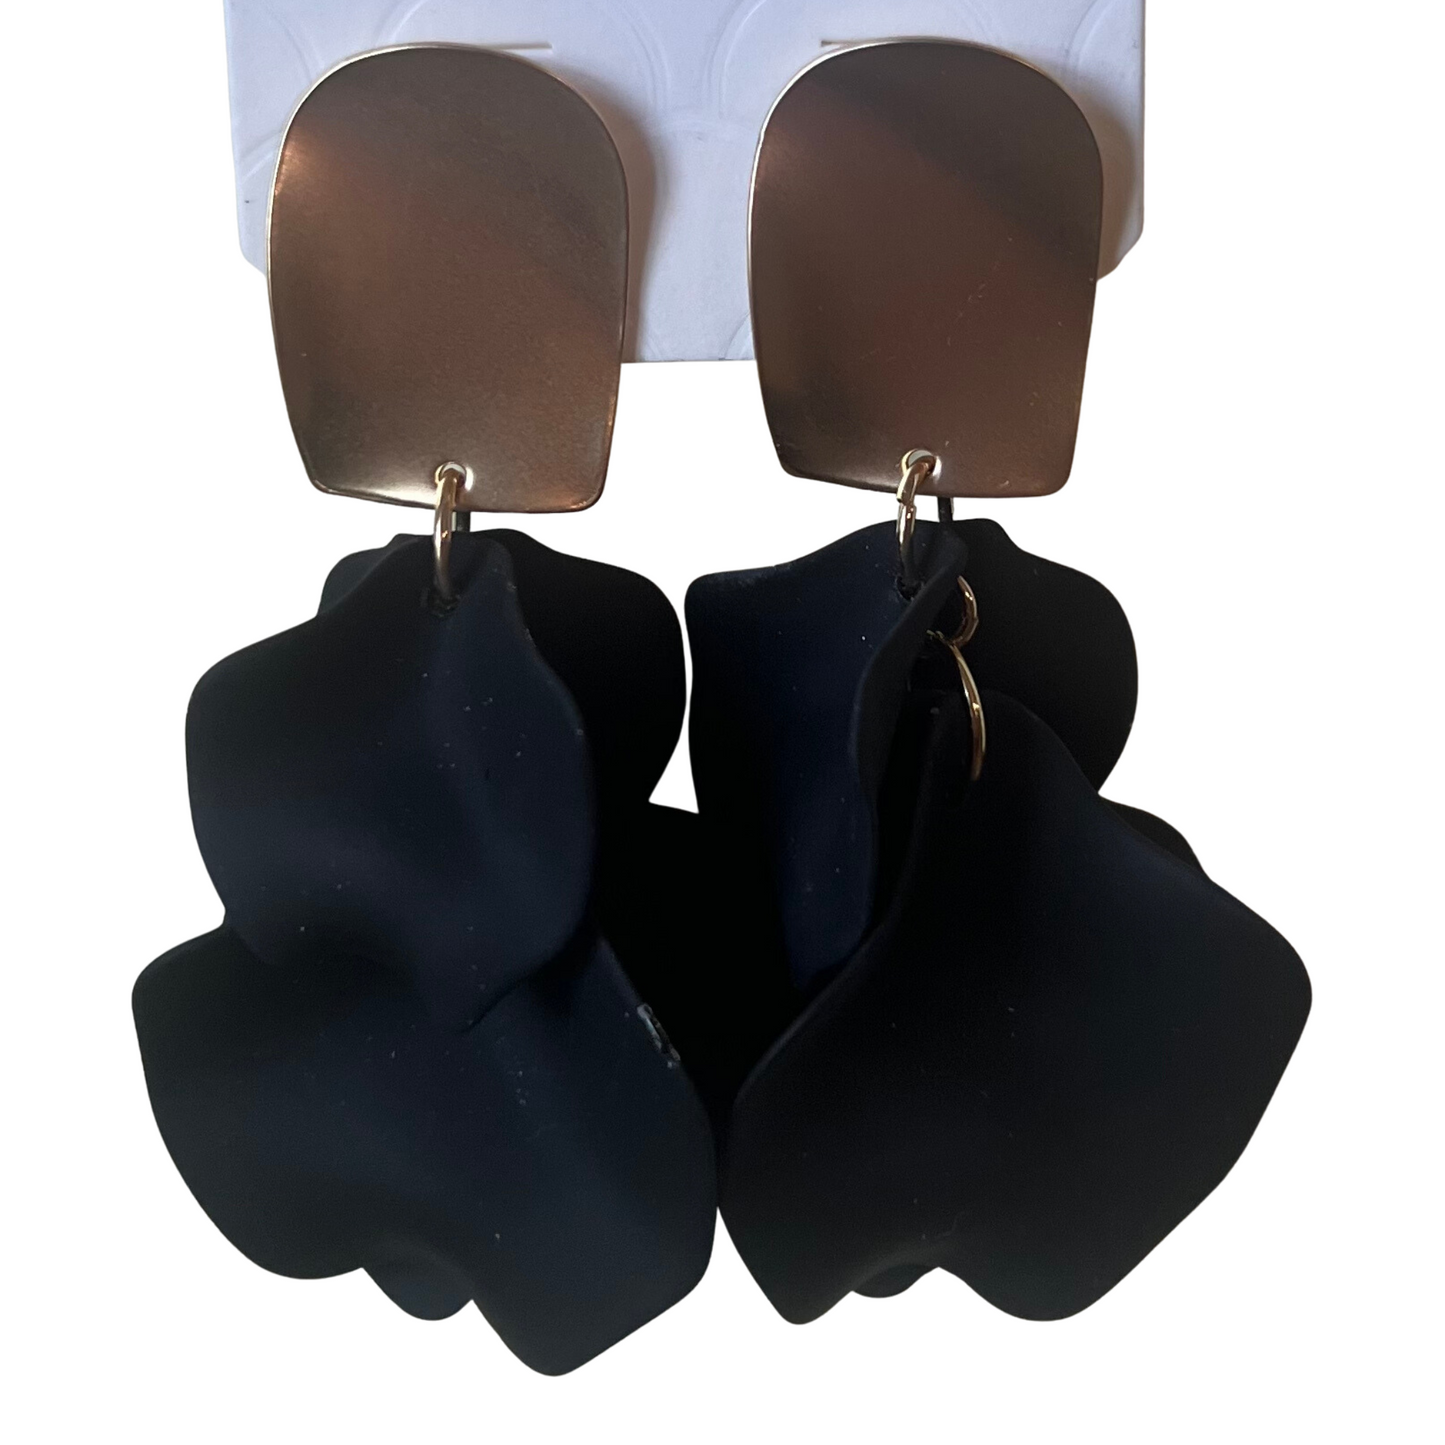 Flower petal earrings in black